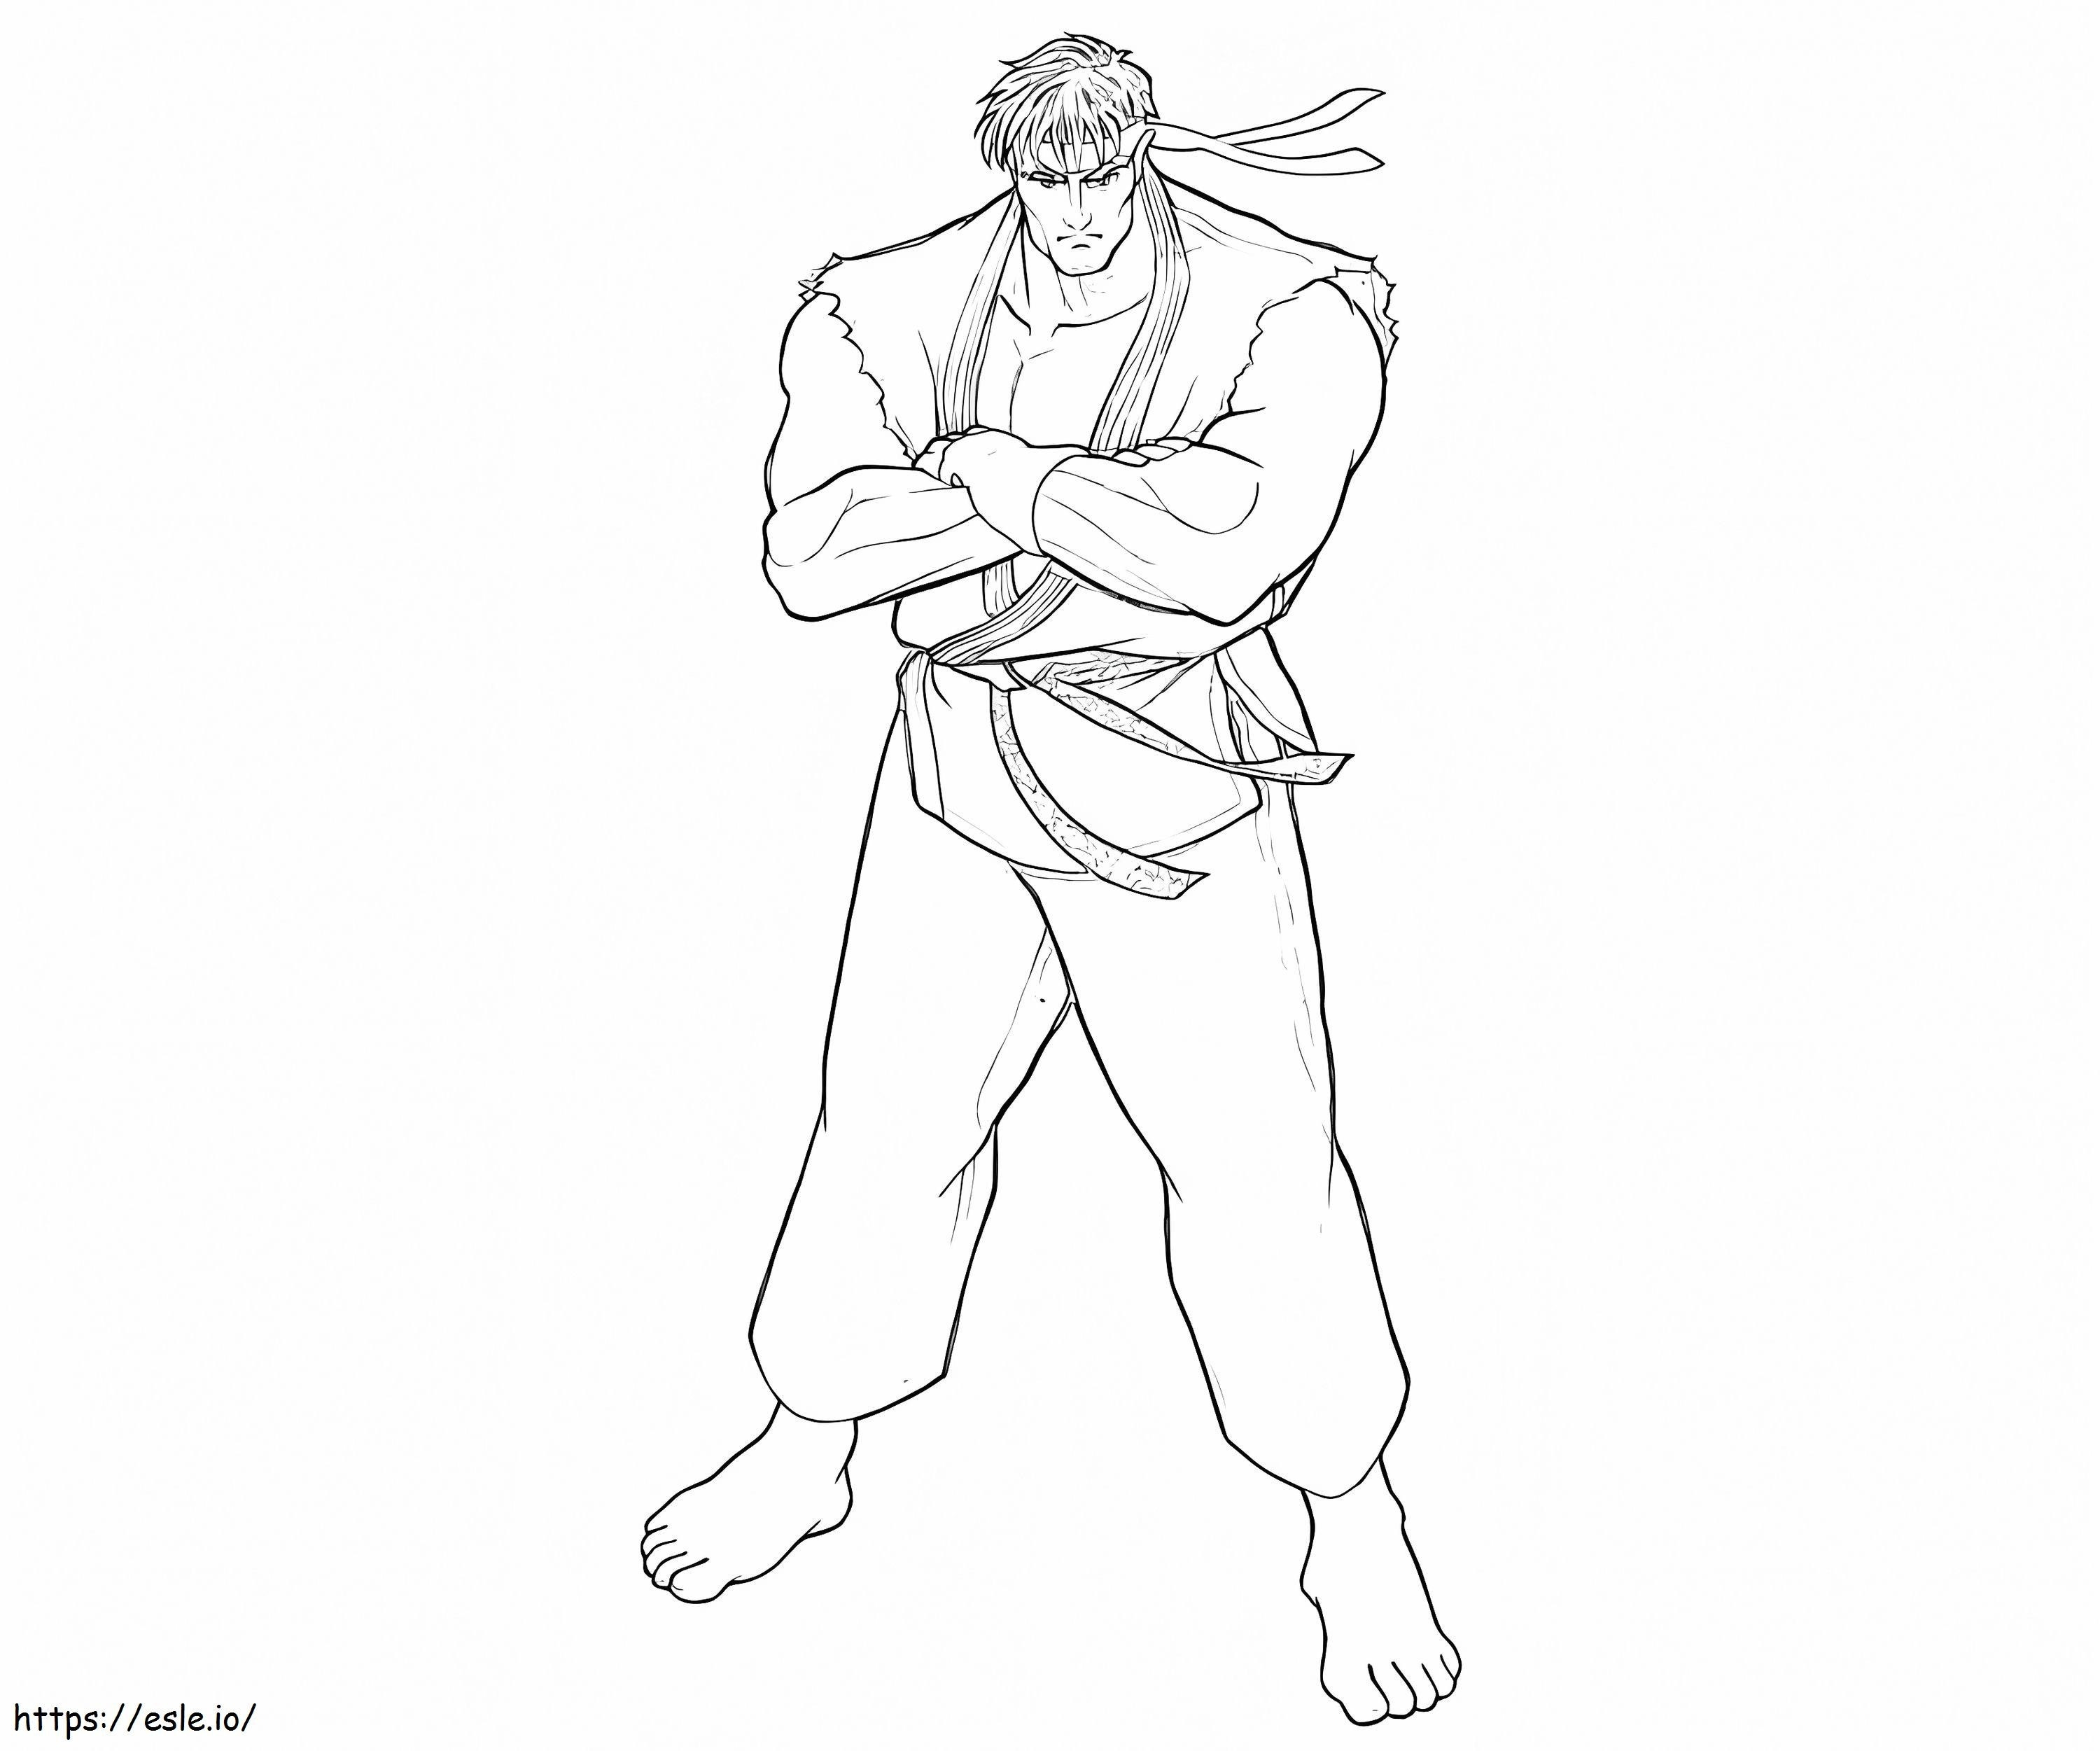 Uwolnij Ryu kolorowanka